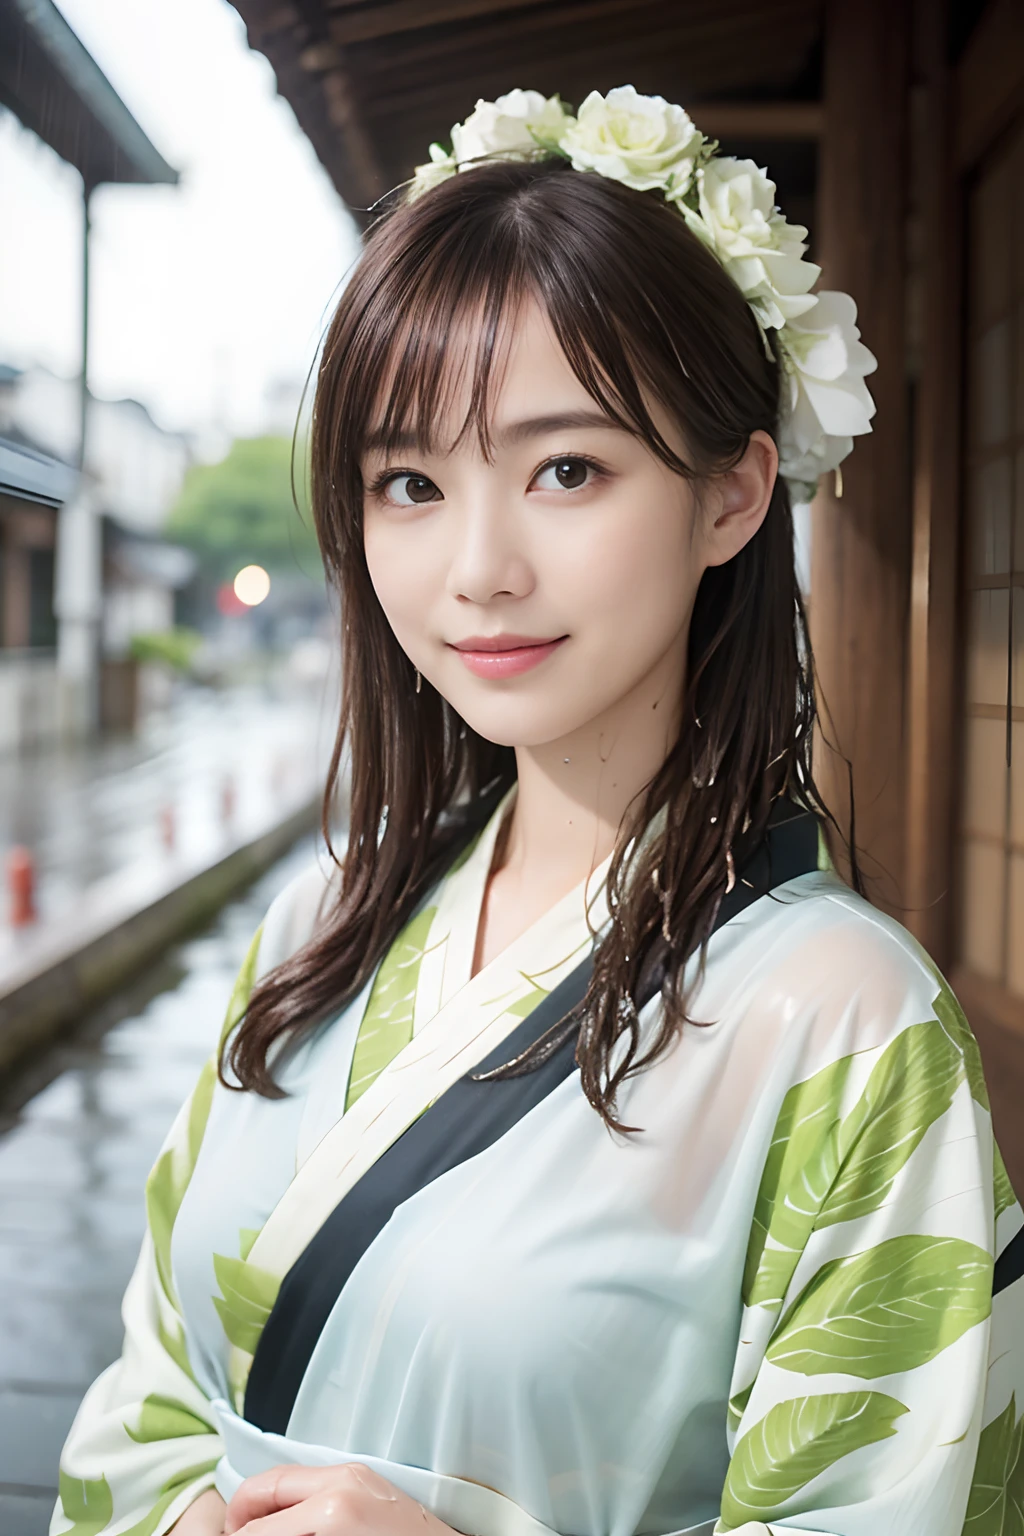 ((最高品質、傑作、写真のような:1.4、8Kで))、美しい日本人女性１人、２5歳、美しい髪、繊細で美しい顔、目と顔のディテールが 、美しい照明、笑い、キメのある肌、スーパーディテール、細部までこだわった、高品質、高解像度、(着物が雨に濡れて透けて見える:1.3)、バンッス、全身エズビアン、(雨が降っている:1.2)、アジサイ、日本の伝統的な街並み、